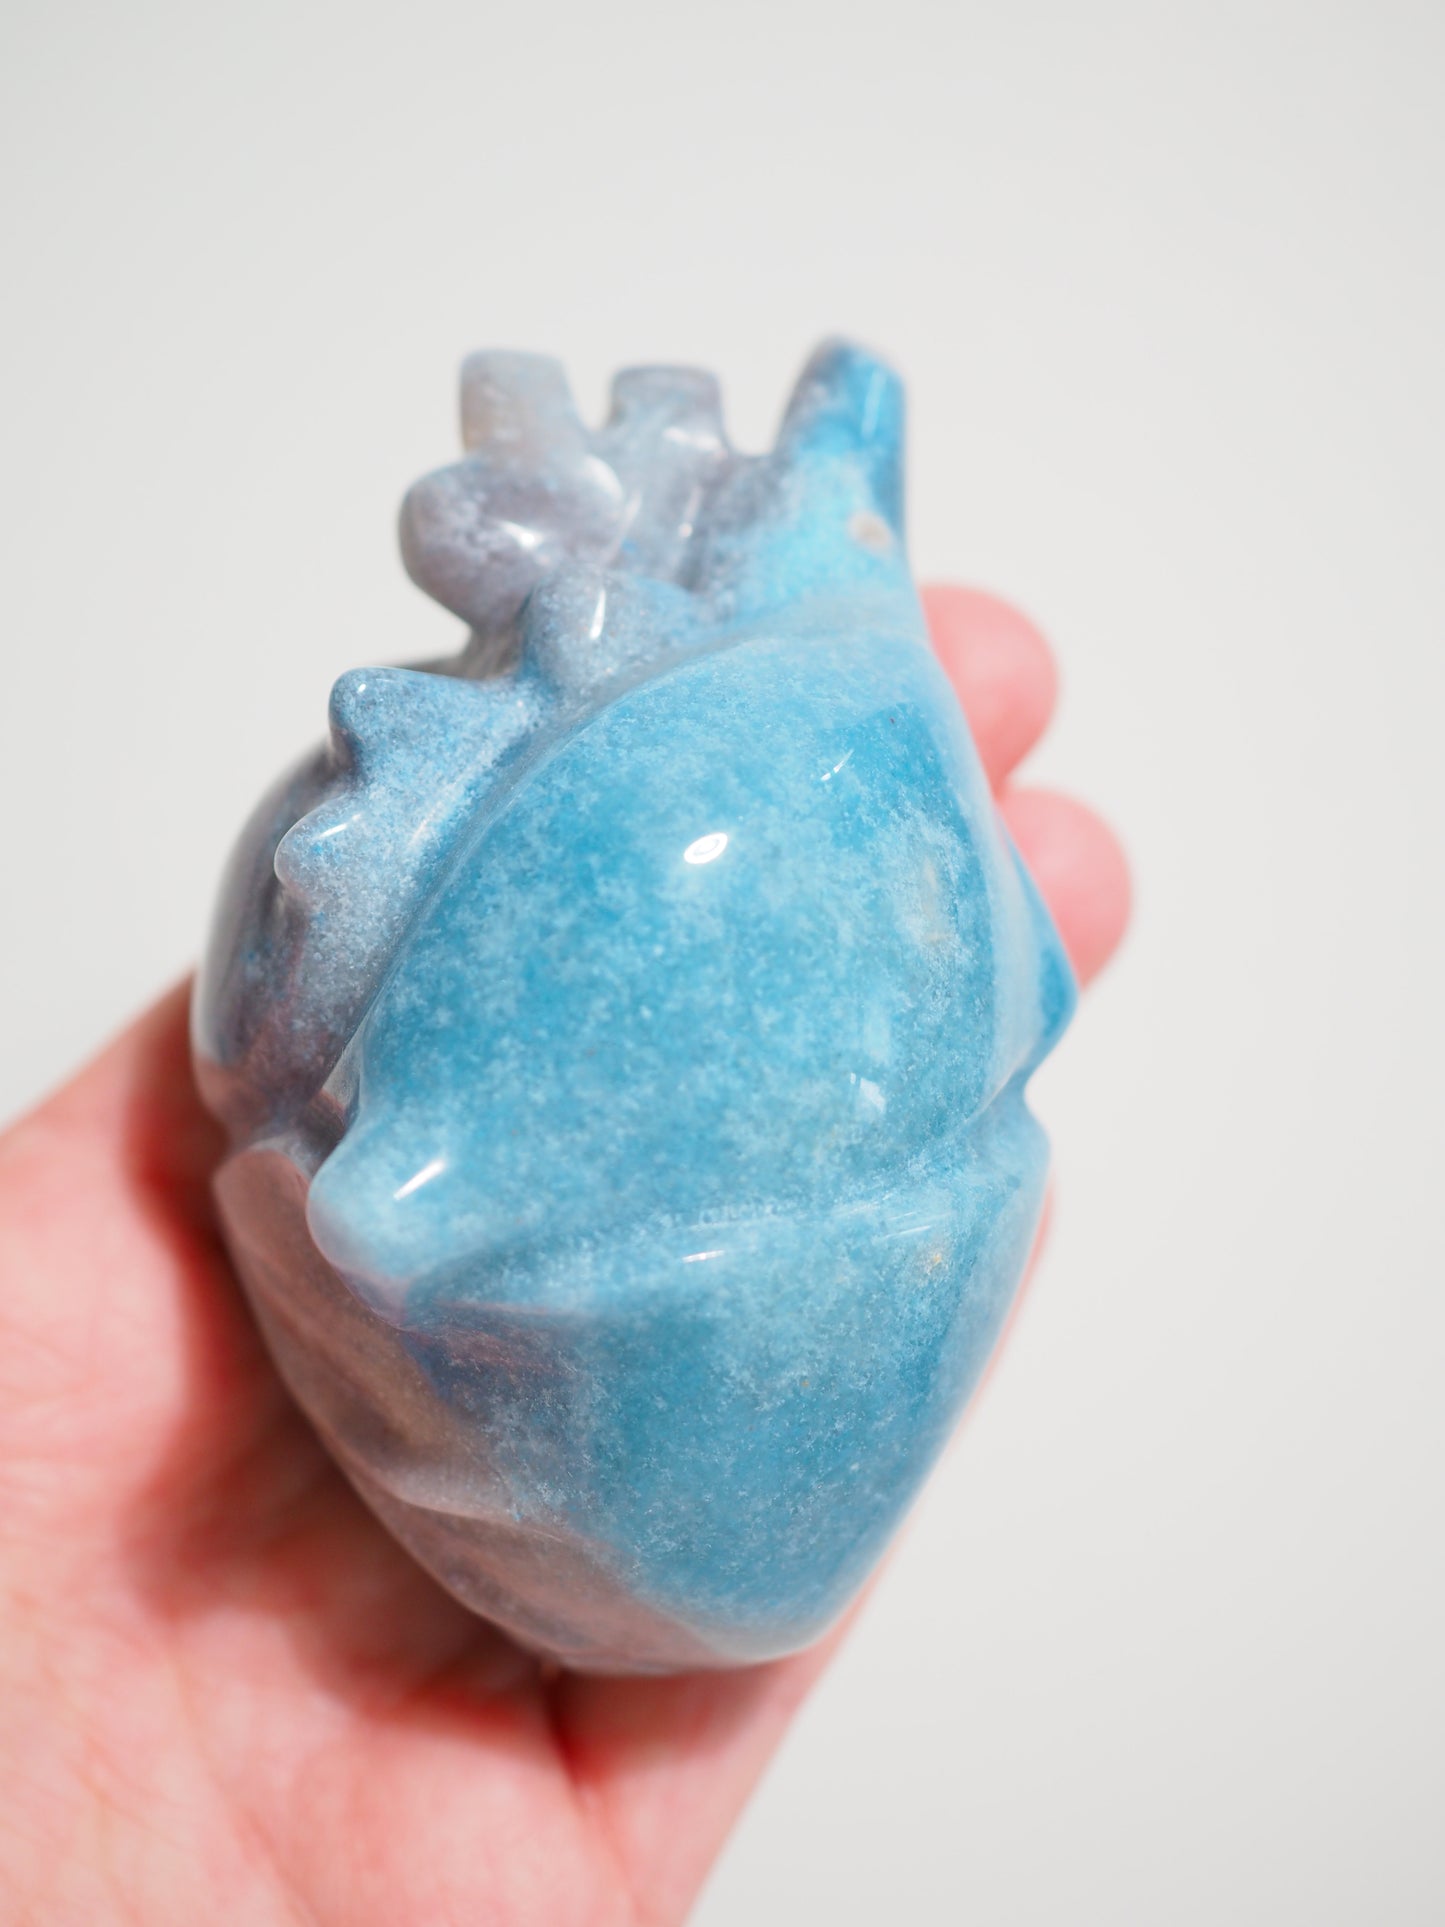 Trolleit Menschliches Herz . Trollite Human Heart  9cm -  Hand Carved